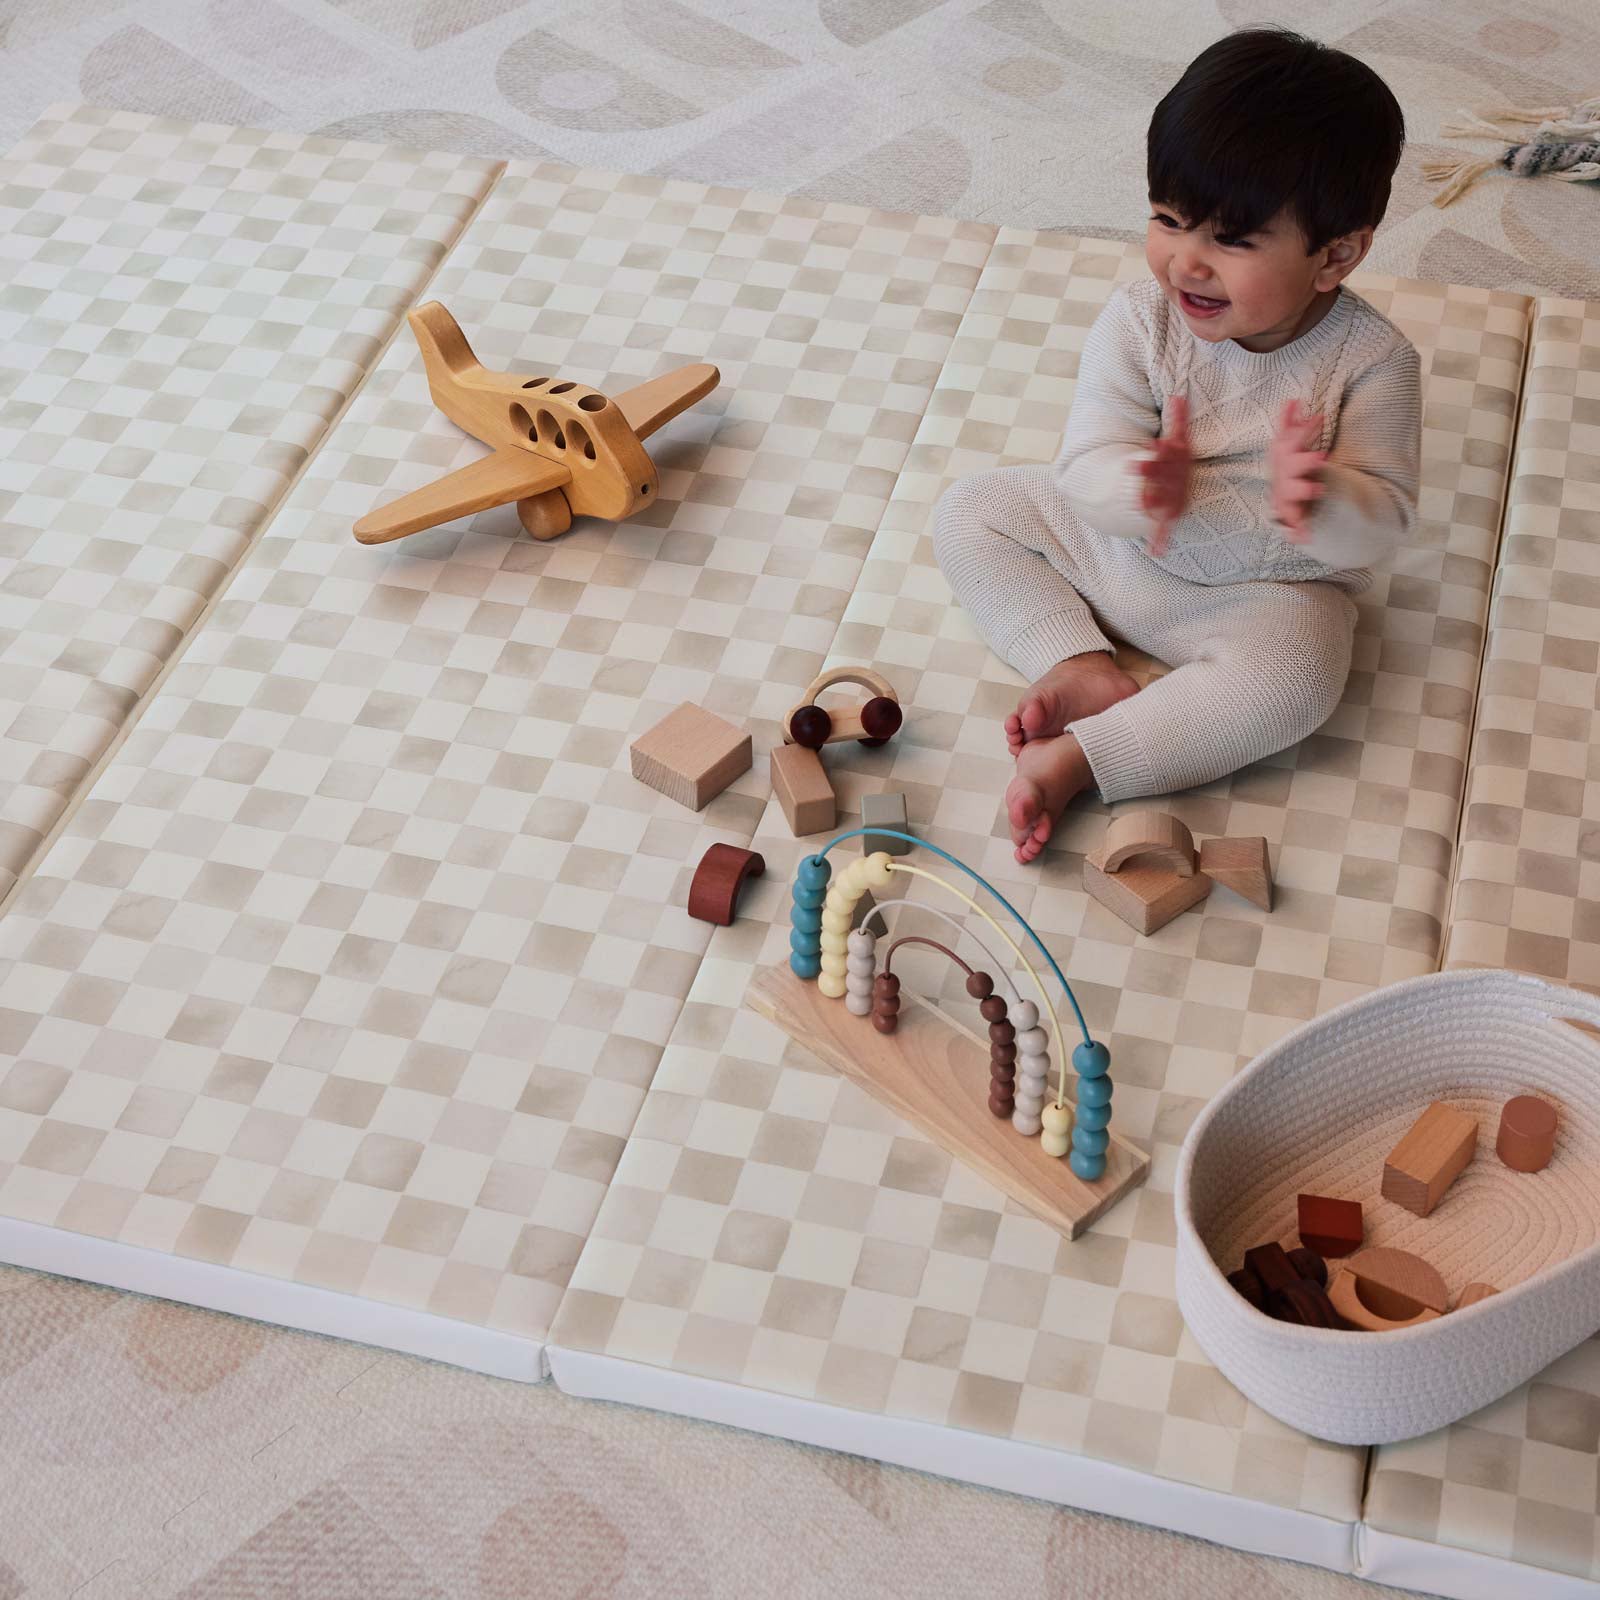 Best Play Mats & Floor Mats for Kids and Babies Manufacturer